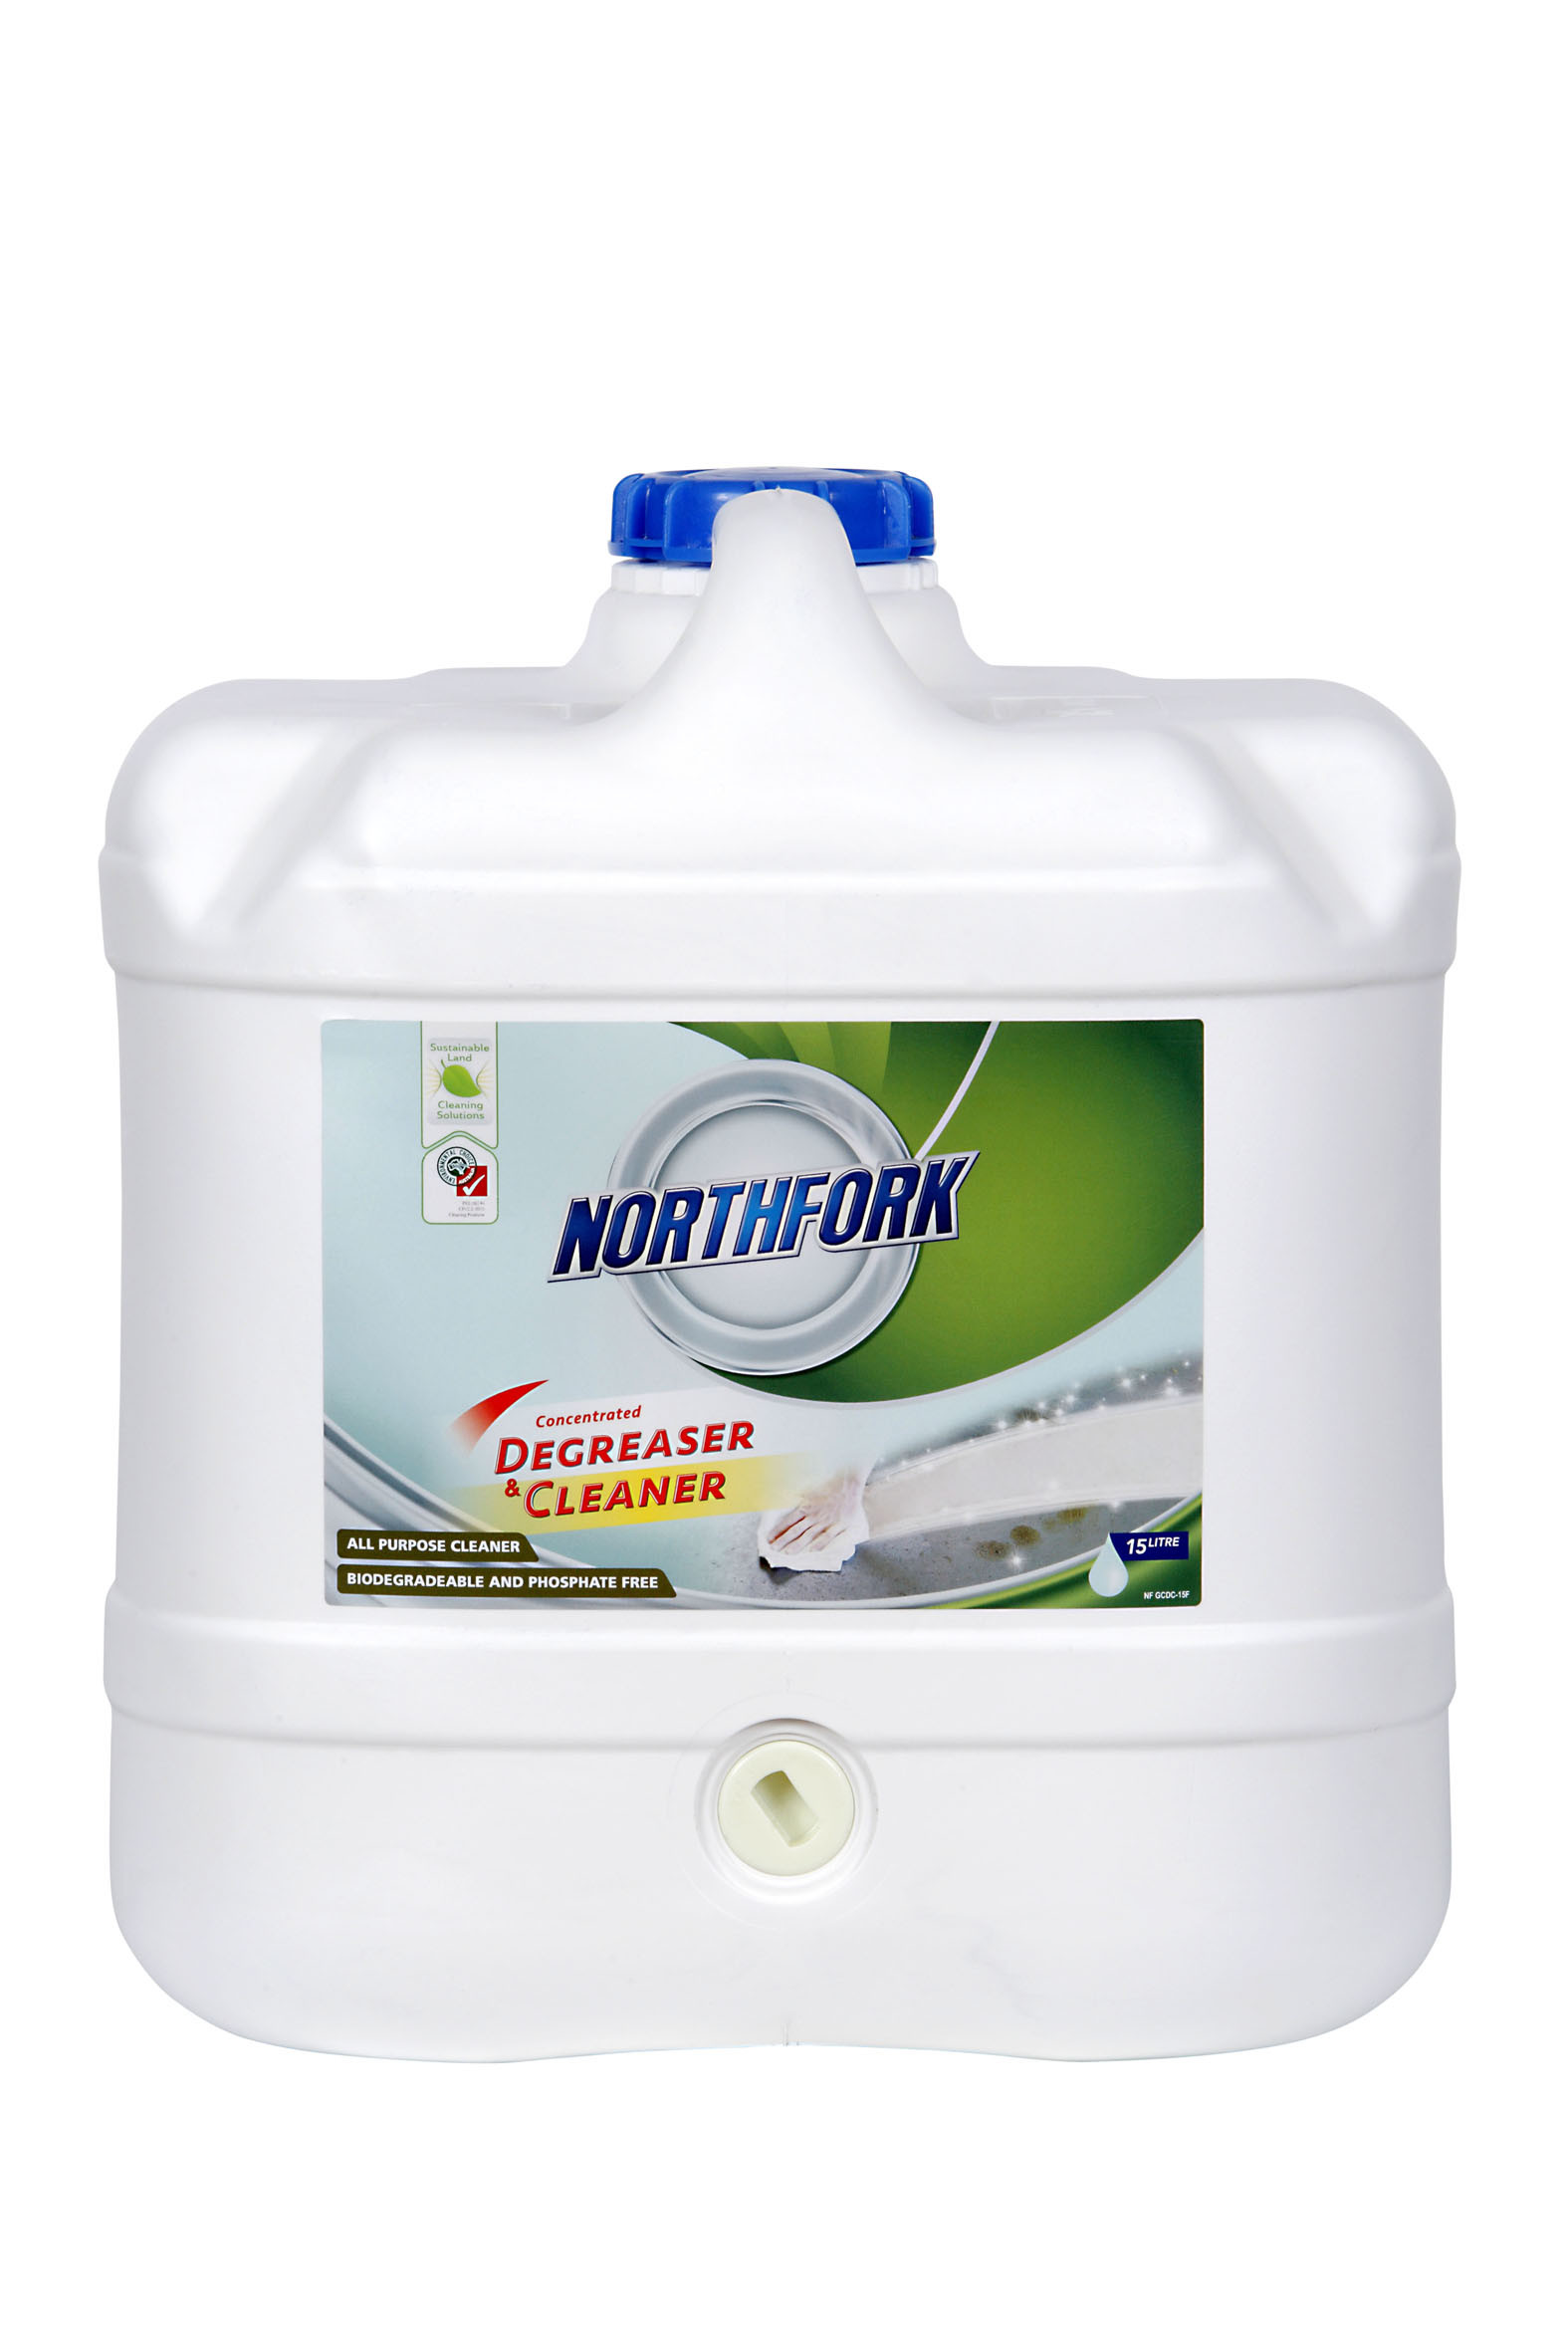 Northfork GECA Concentrated Degreaser Cleaner